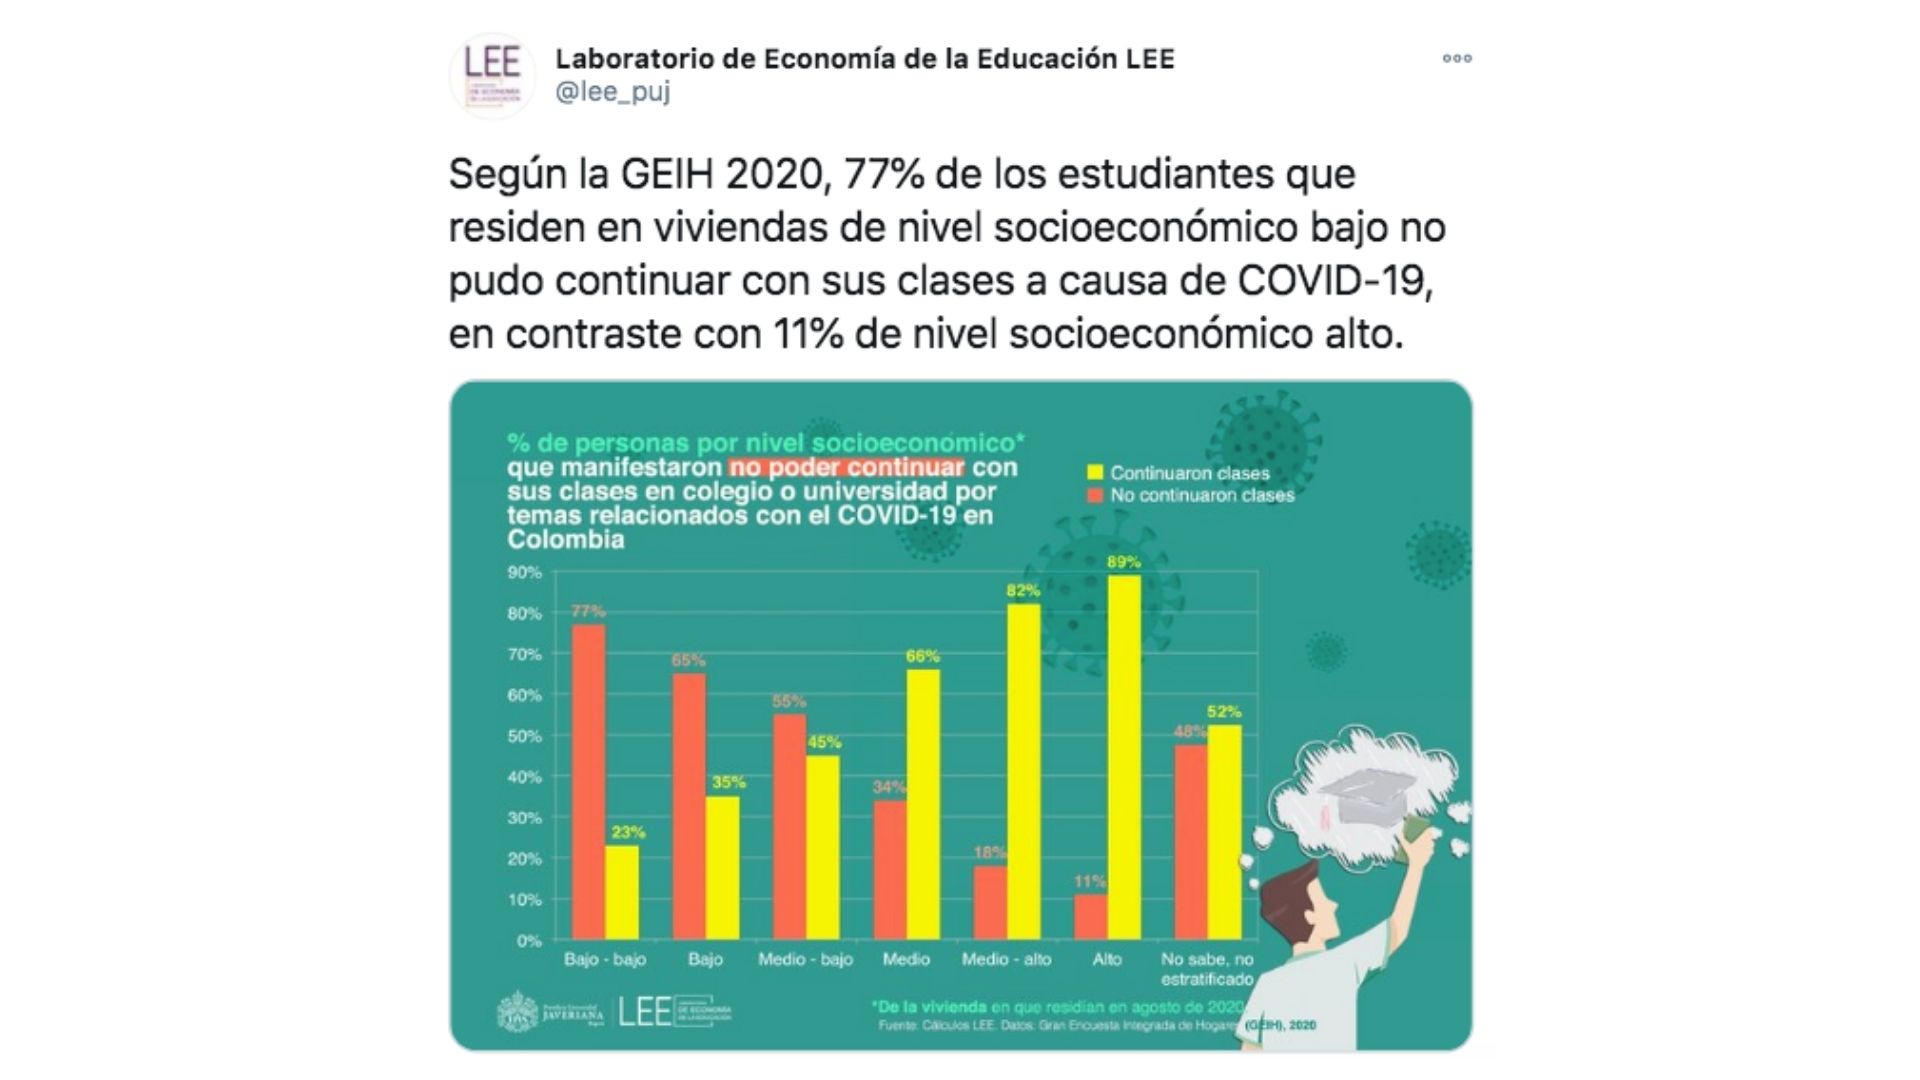 Publicación del Laboratorio de Economía de la Educación LEE en su cuenta de Twitter.